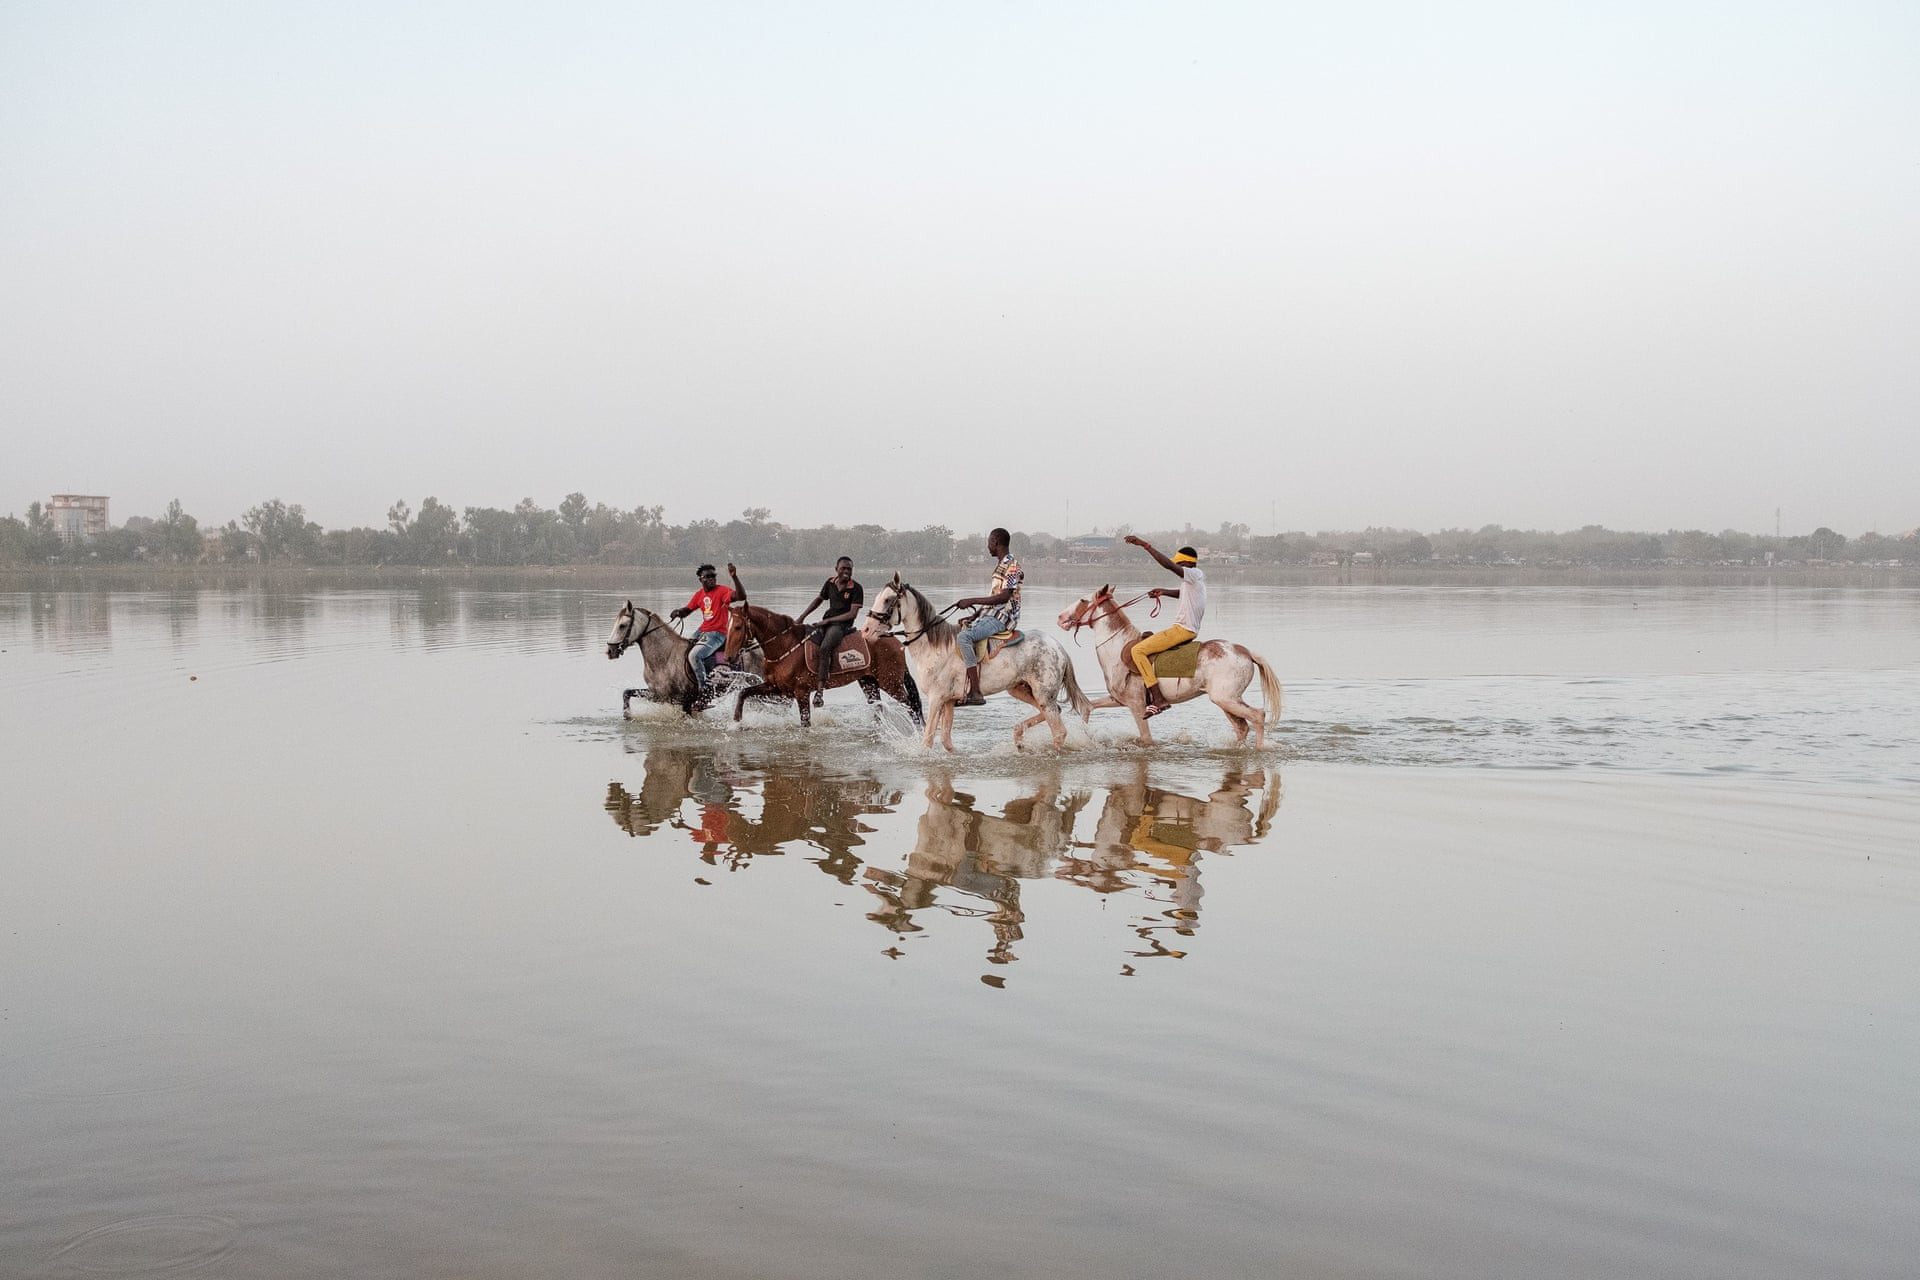 Những thanh niên trẻ đưa những con ngựa đua đi giải nhiệt trong một hồ chứa nước gần chuồng ngựa ở phía bắc thủ đô Ouagadougou, Burkina Faso. Ảnh: Guy Peterson / The Guardian.